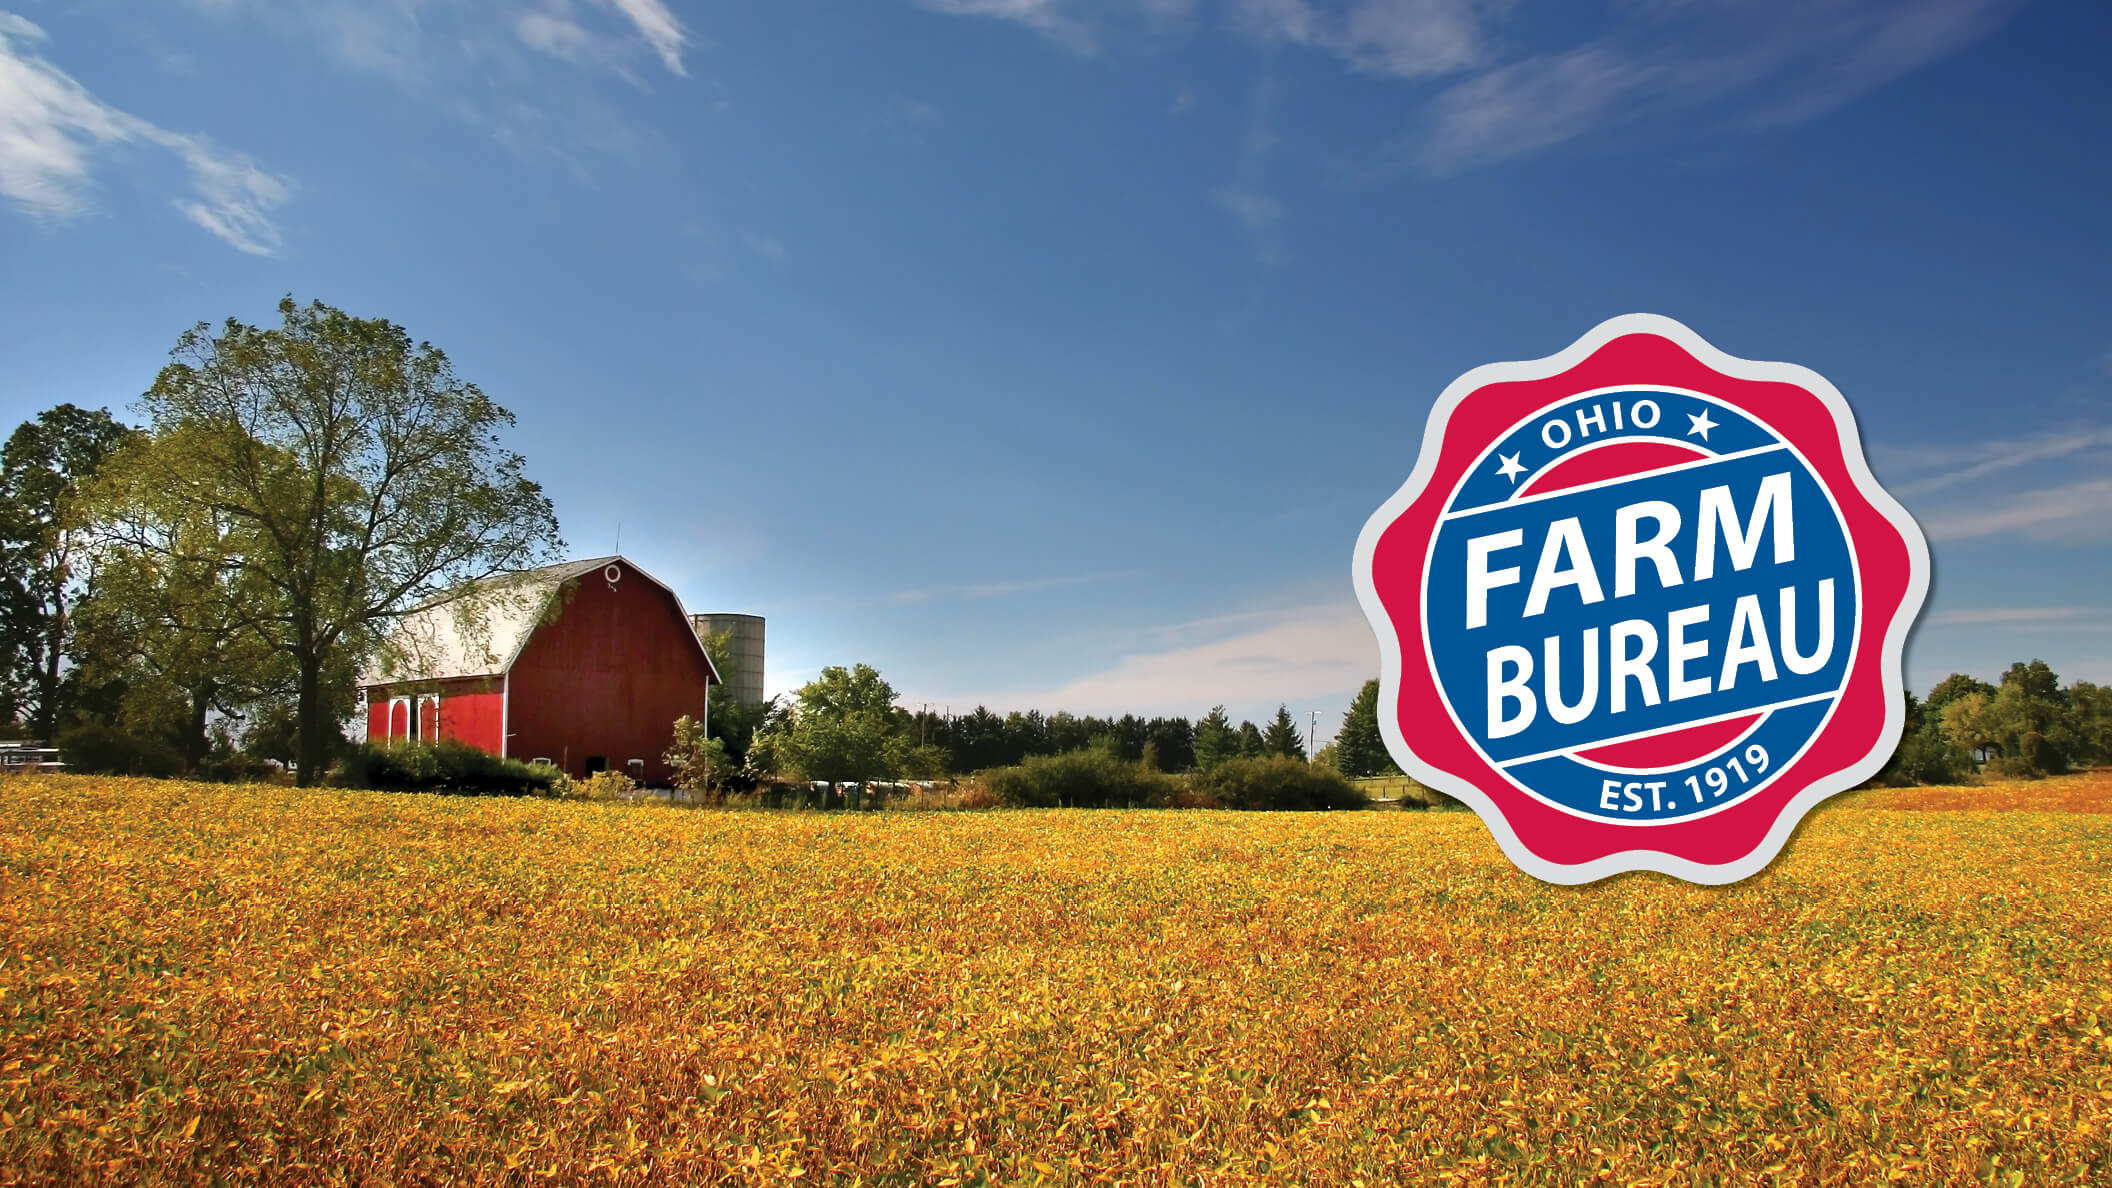 clark-county-farm-bureau-annual-meeting-dinner-ohio-farm-bureau